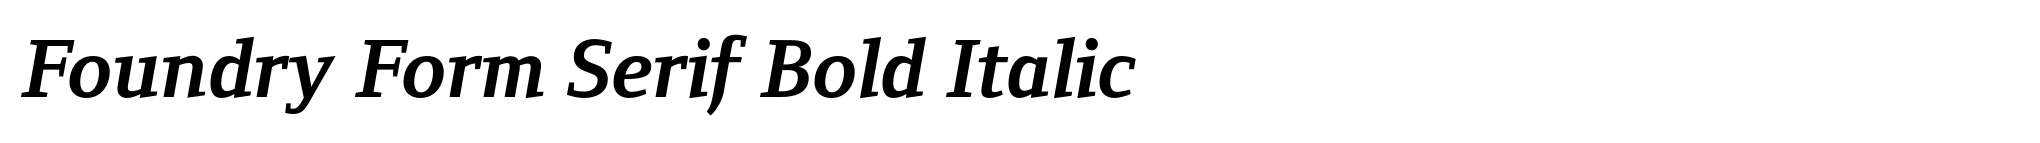 Foundry Form Serif Bold Italic image